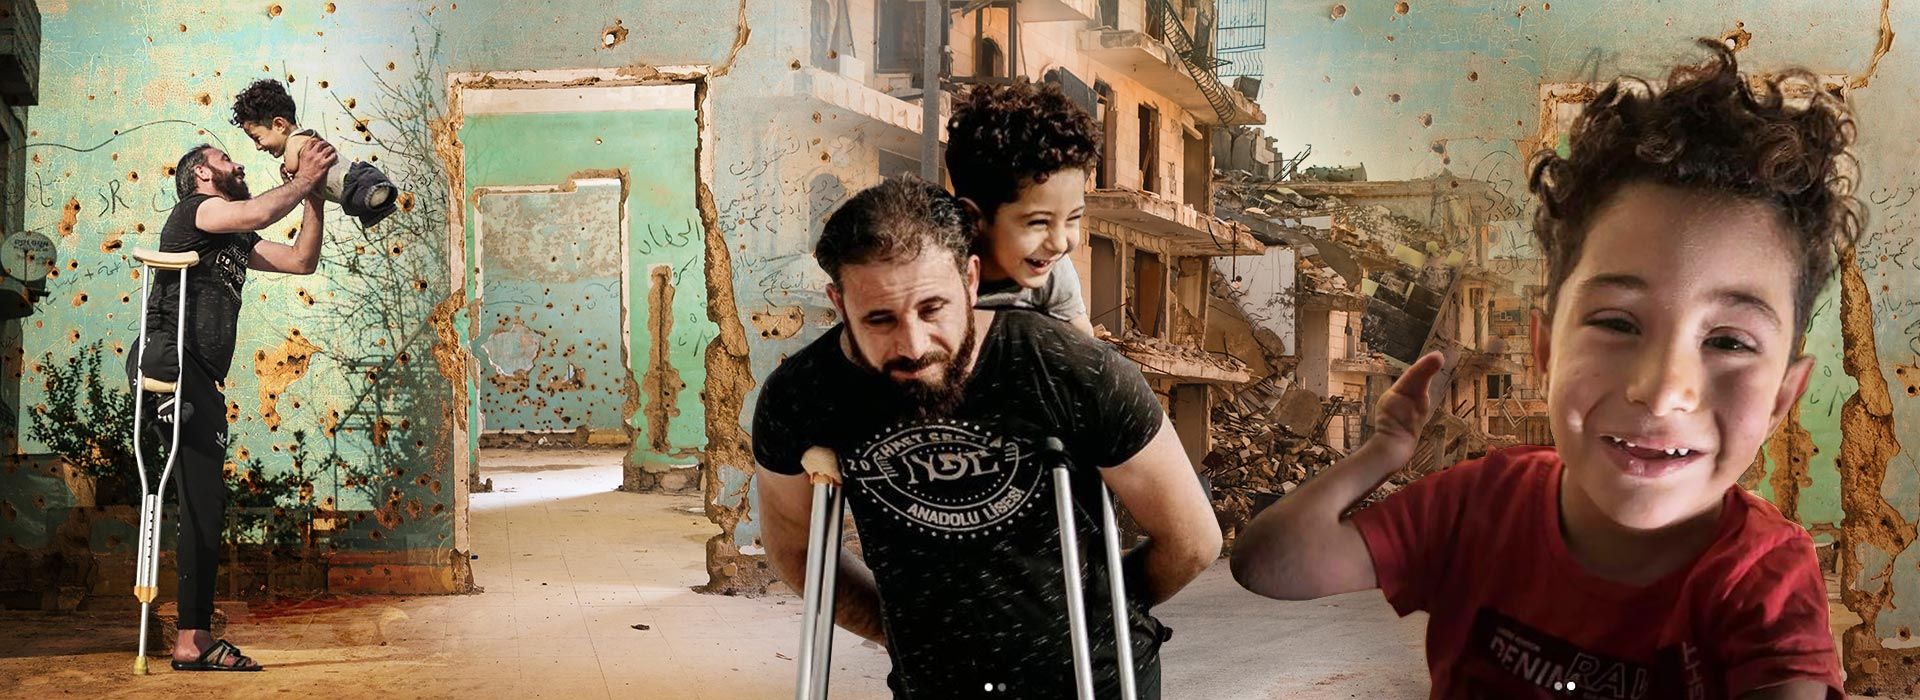 Mustafa nella casa a Siena, la nuova vita del bambino siriano senza arti ha inizio